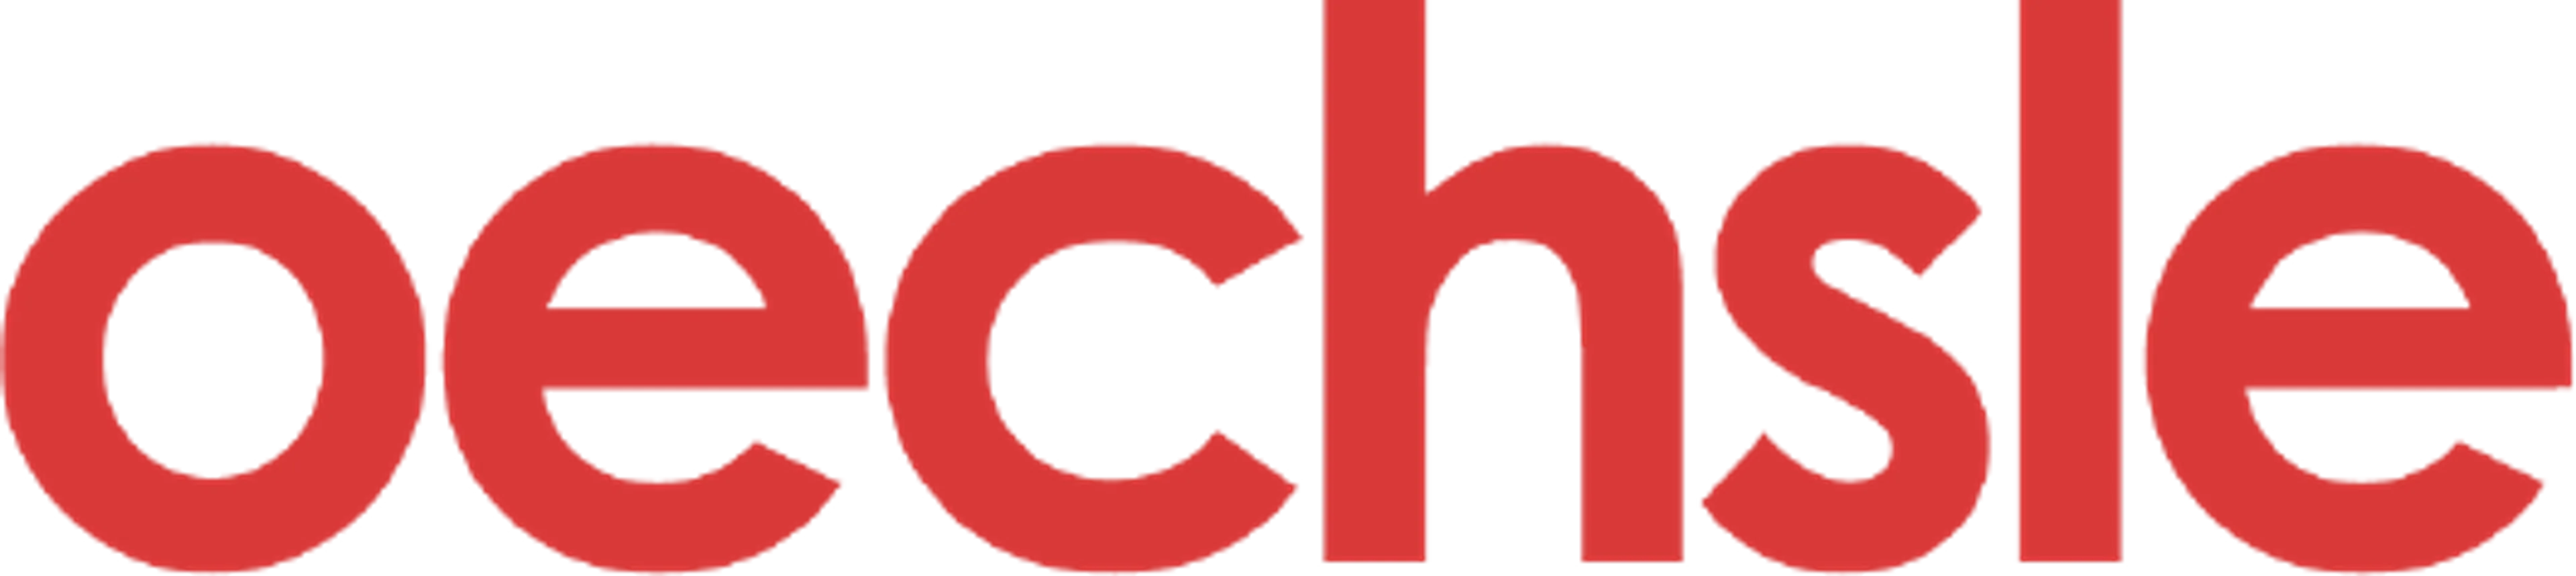 OECHSLE logo